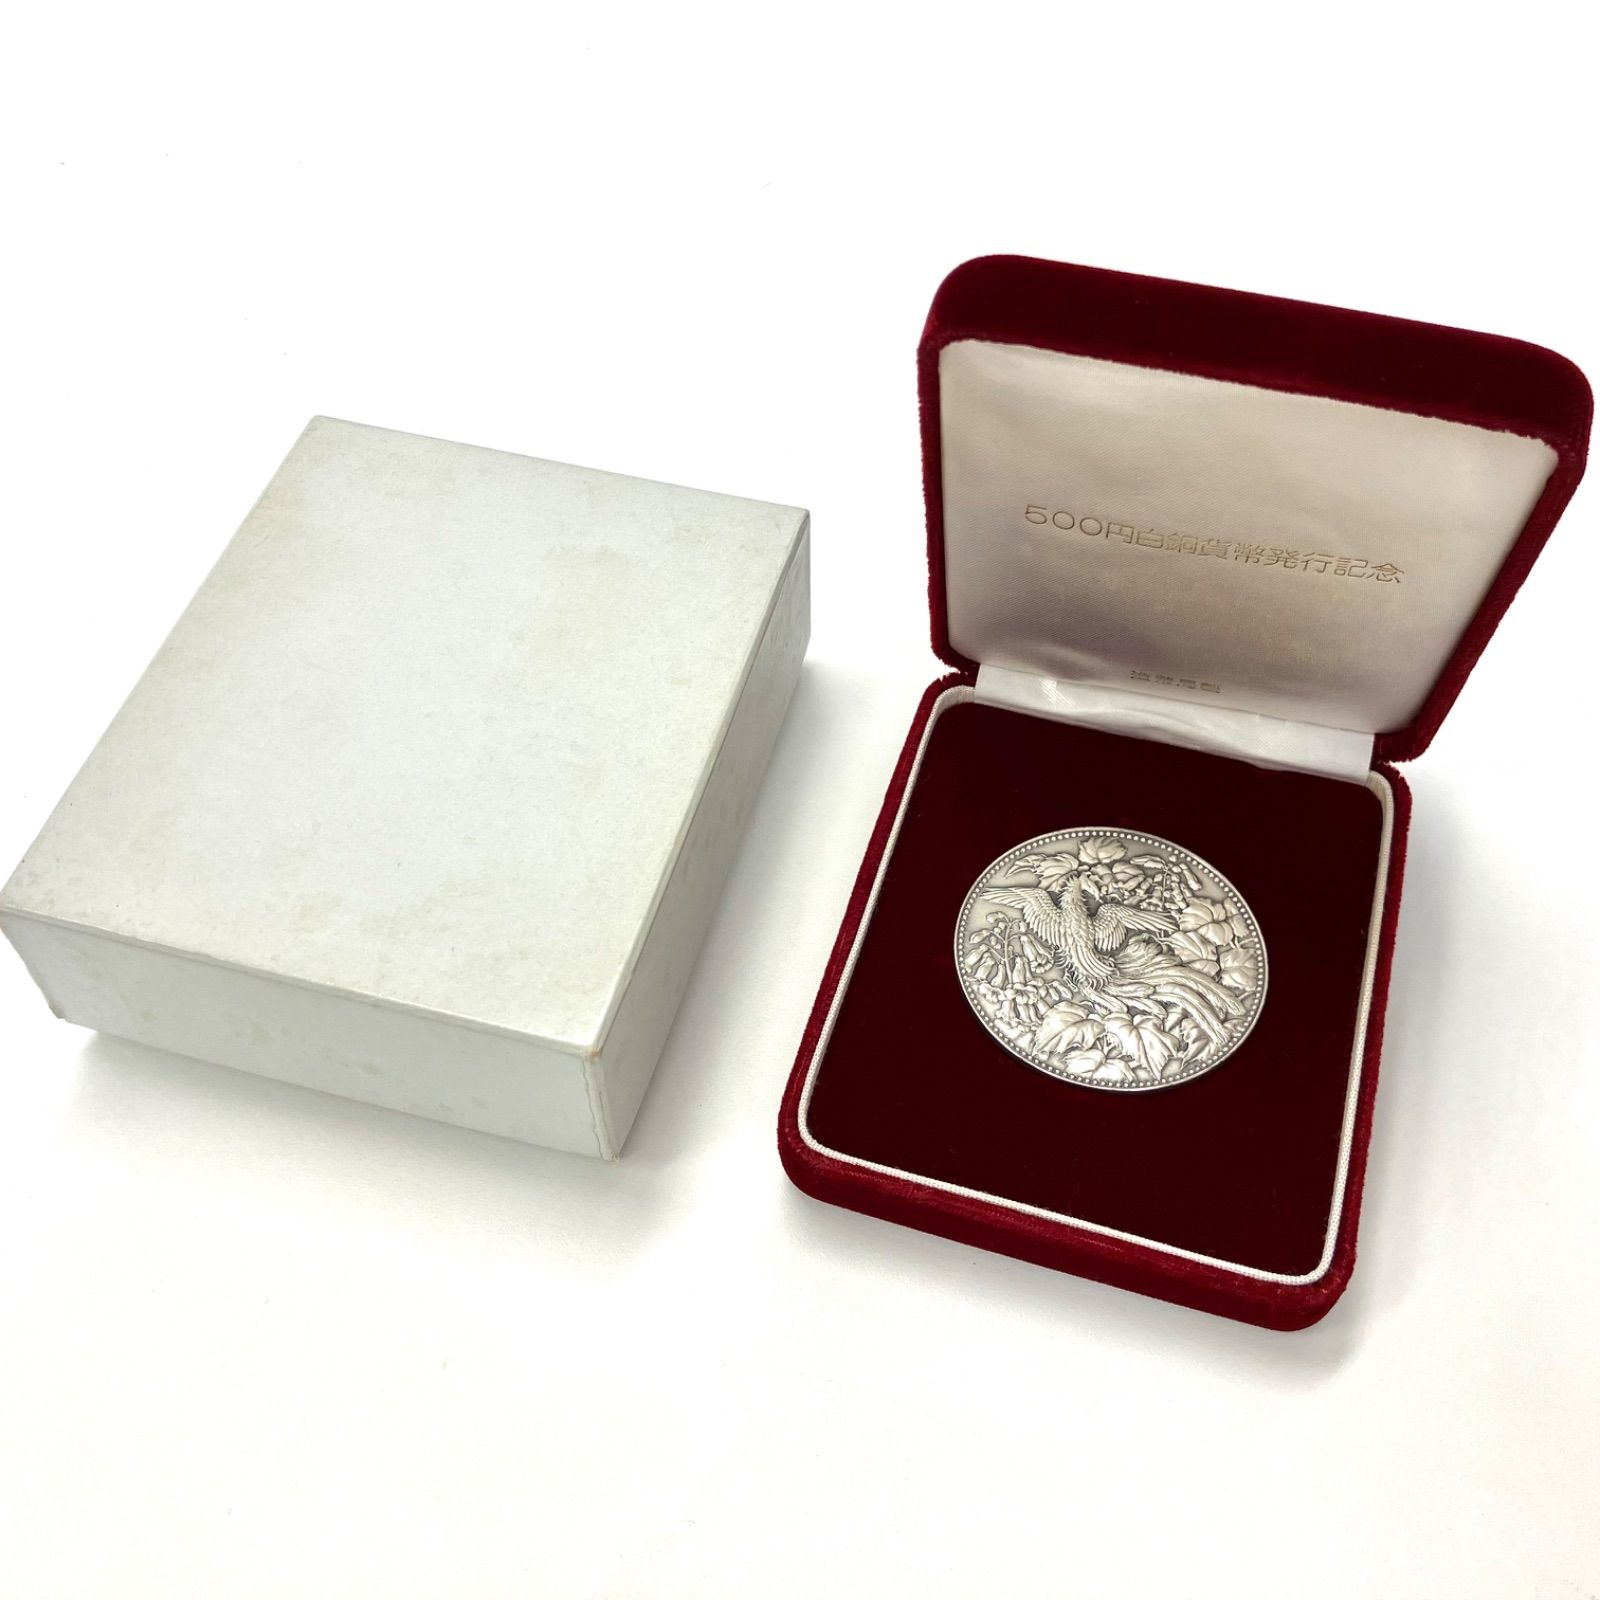 【104325】1982年 500円白銅貨幣発行記念メダル 純銀 極美品